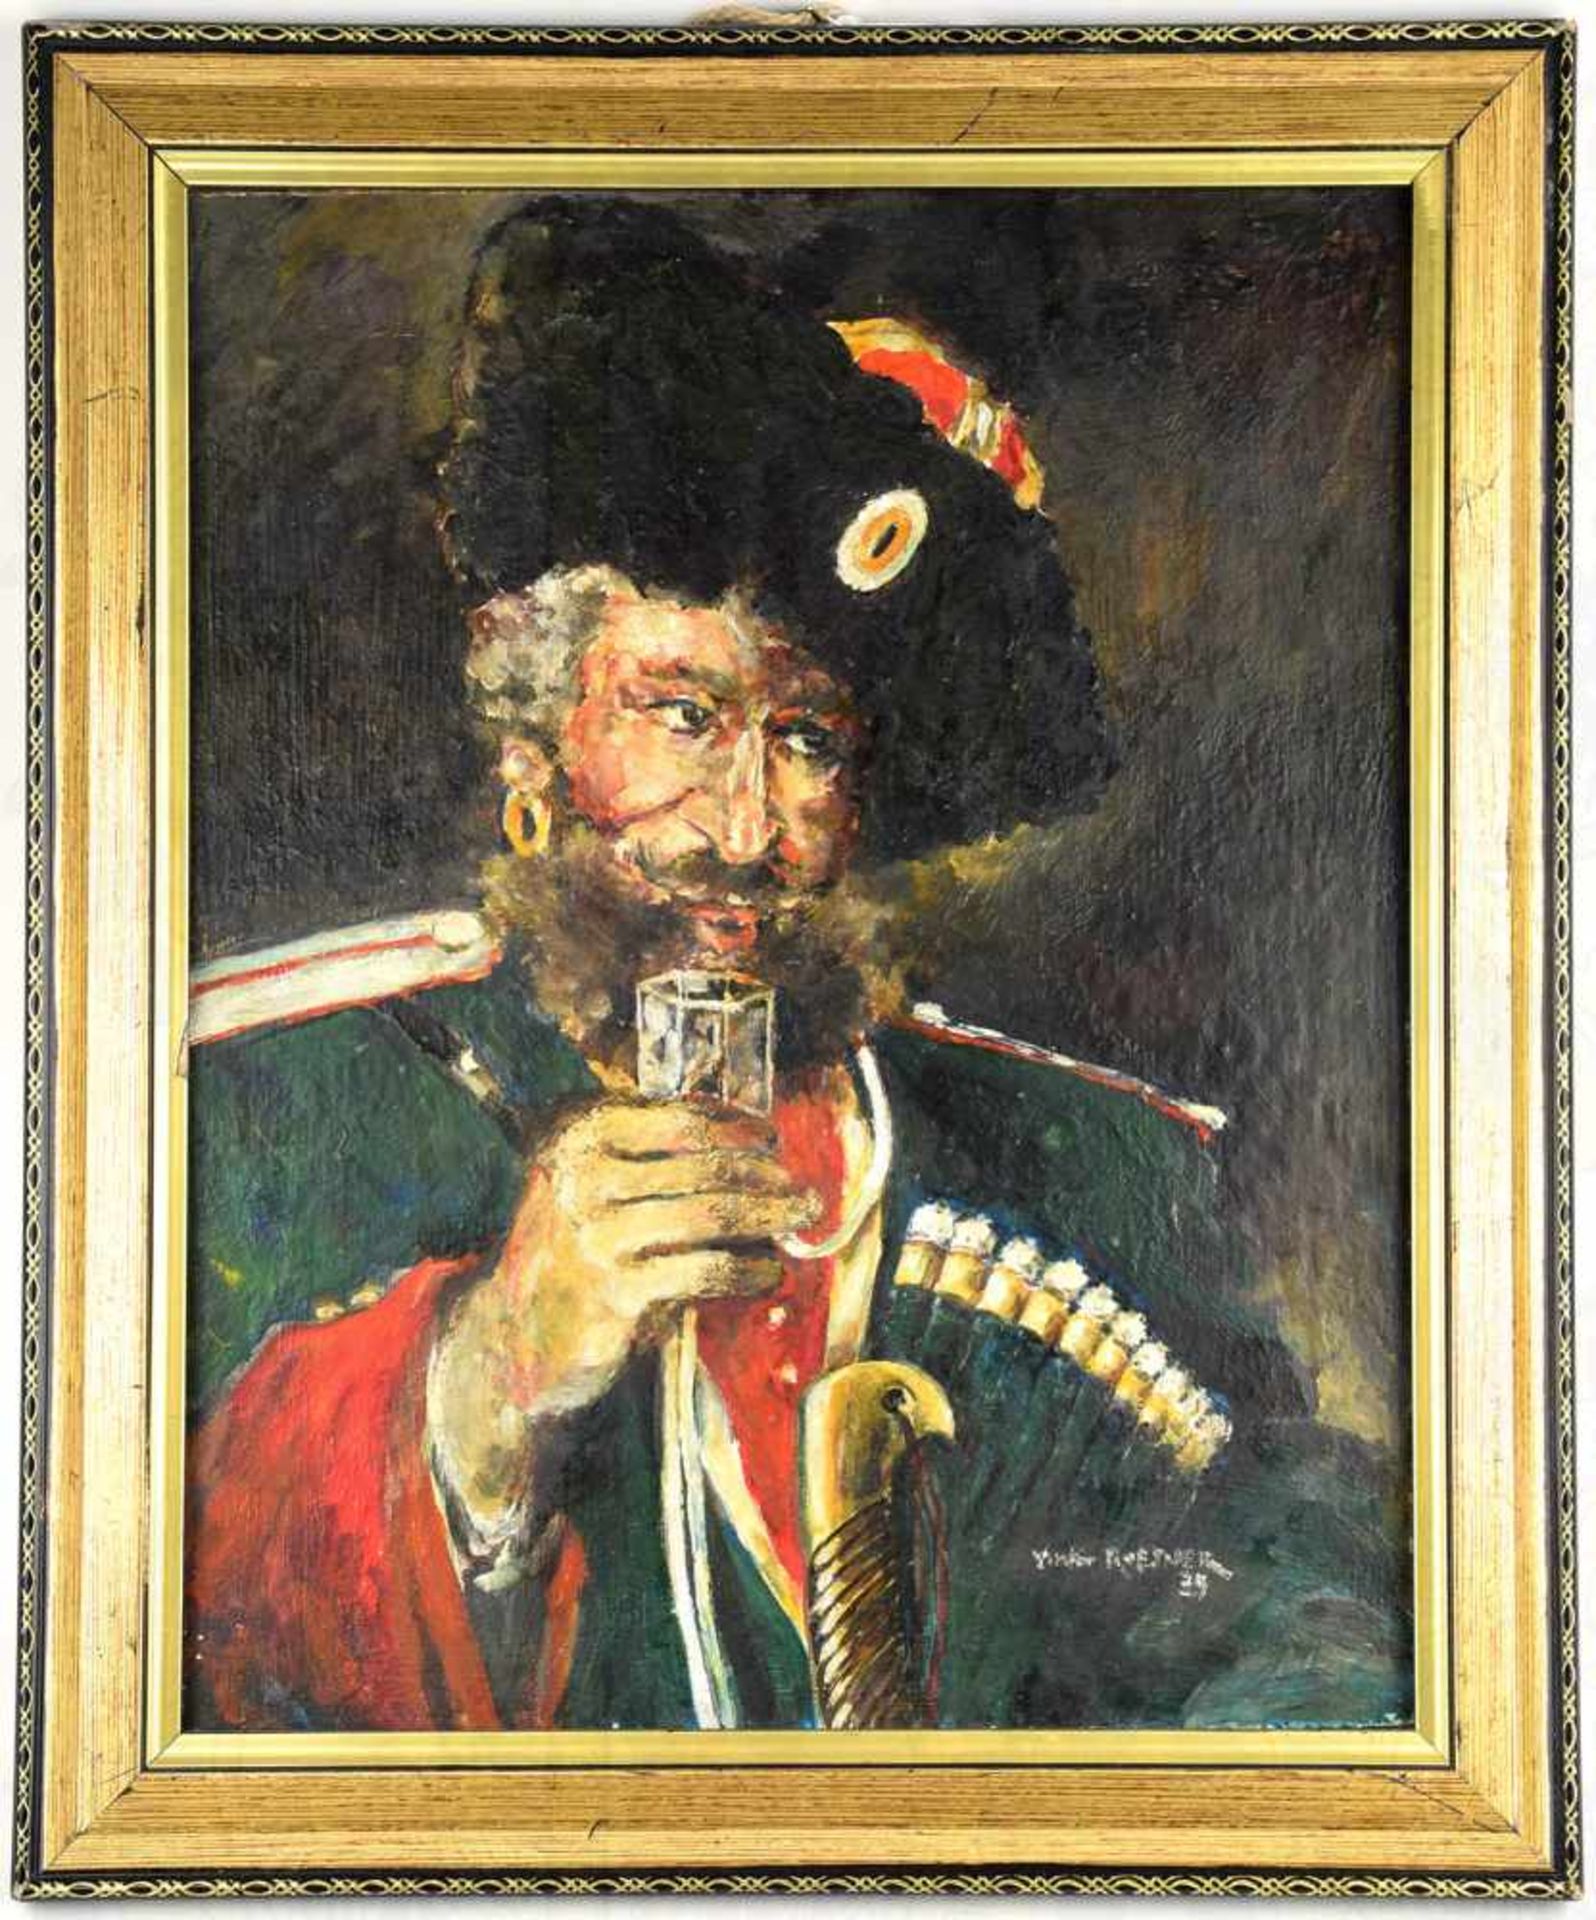 PORTRAIT ZARISTISCHER KOSAK, Ölfarbe auf Holz, in Uniform, m. Pelzmütze u. Schaschka, farbenkräftige